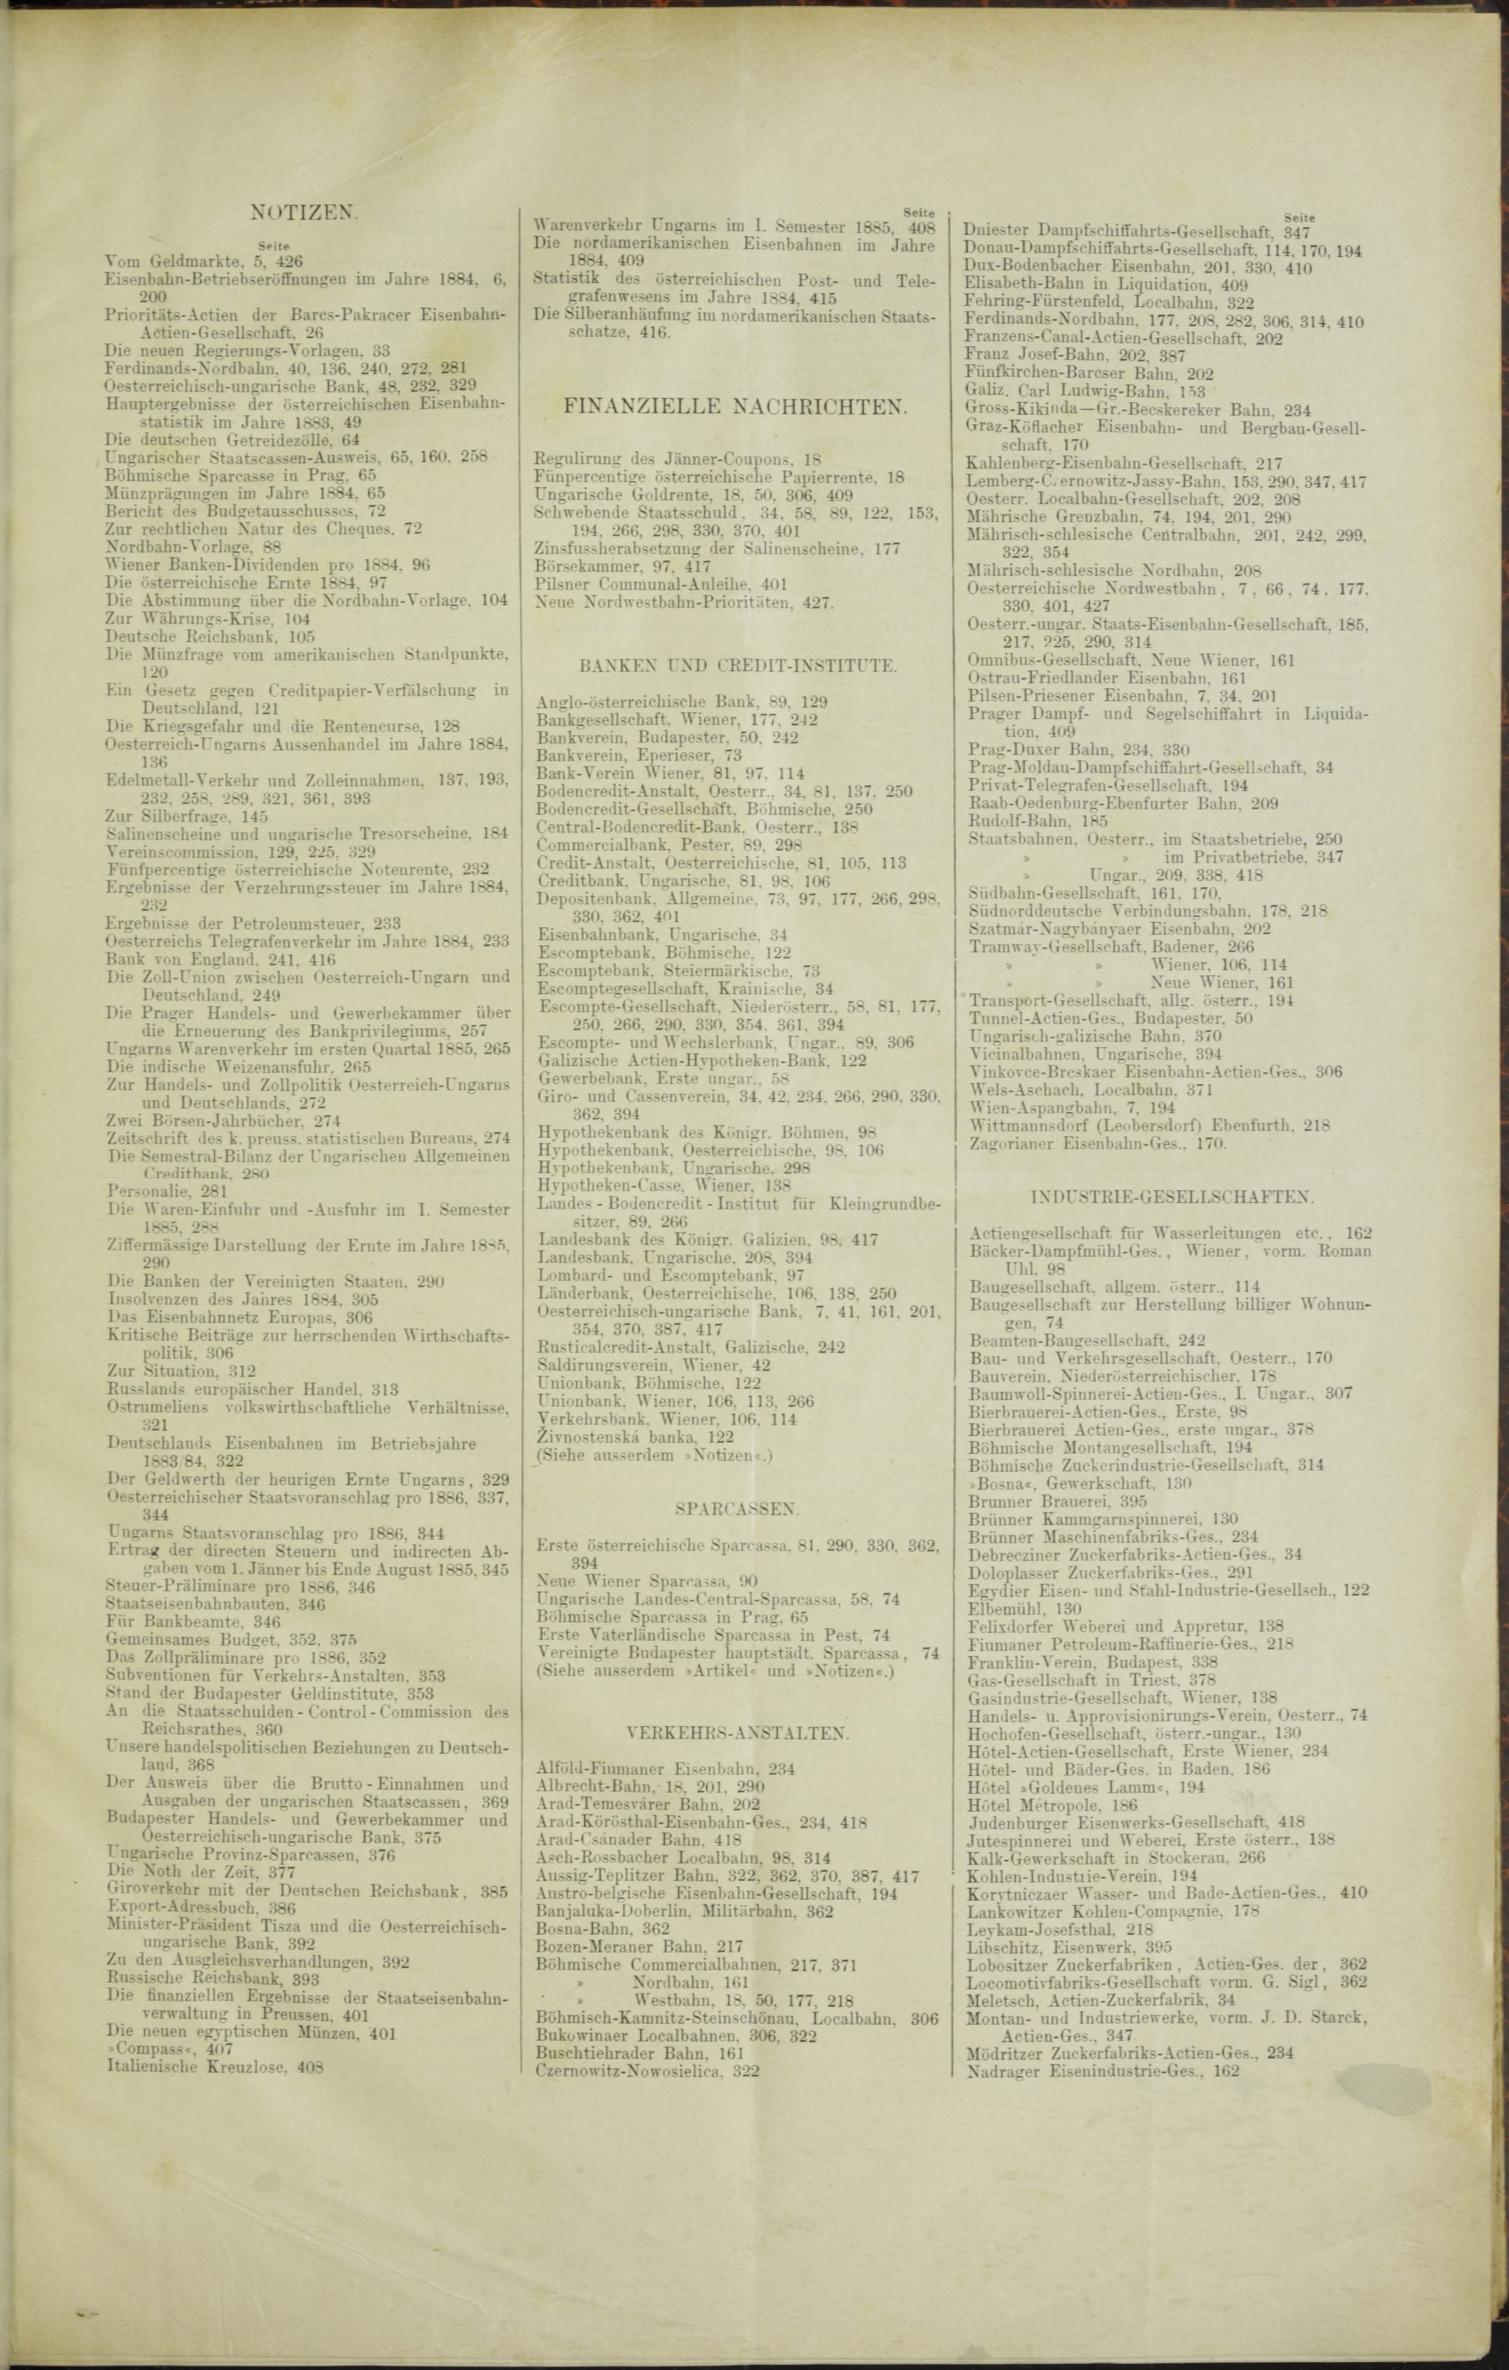 Der Tresor 02.07.1885 - Seite 11